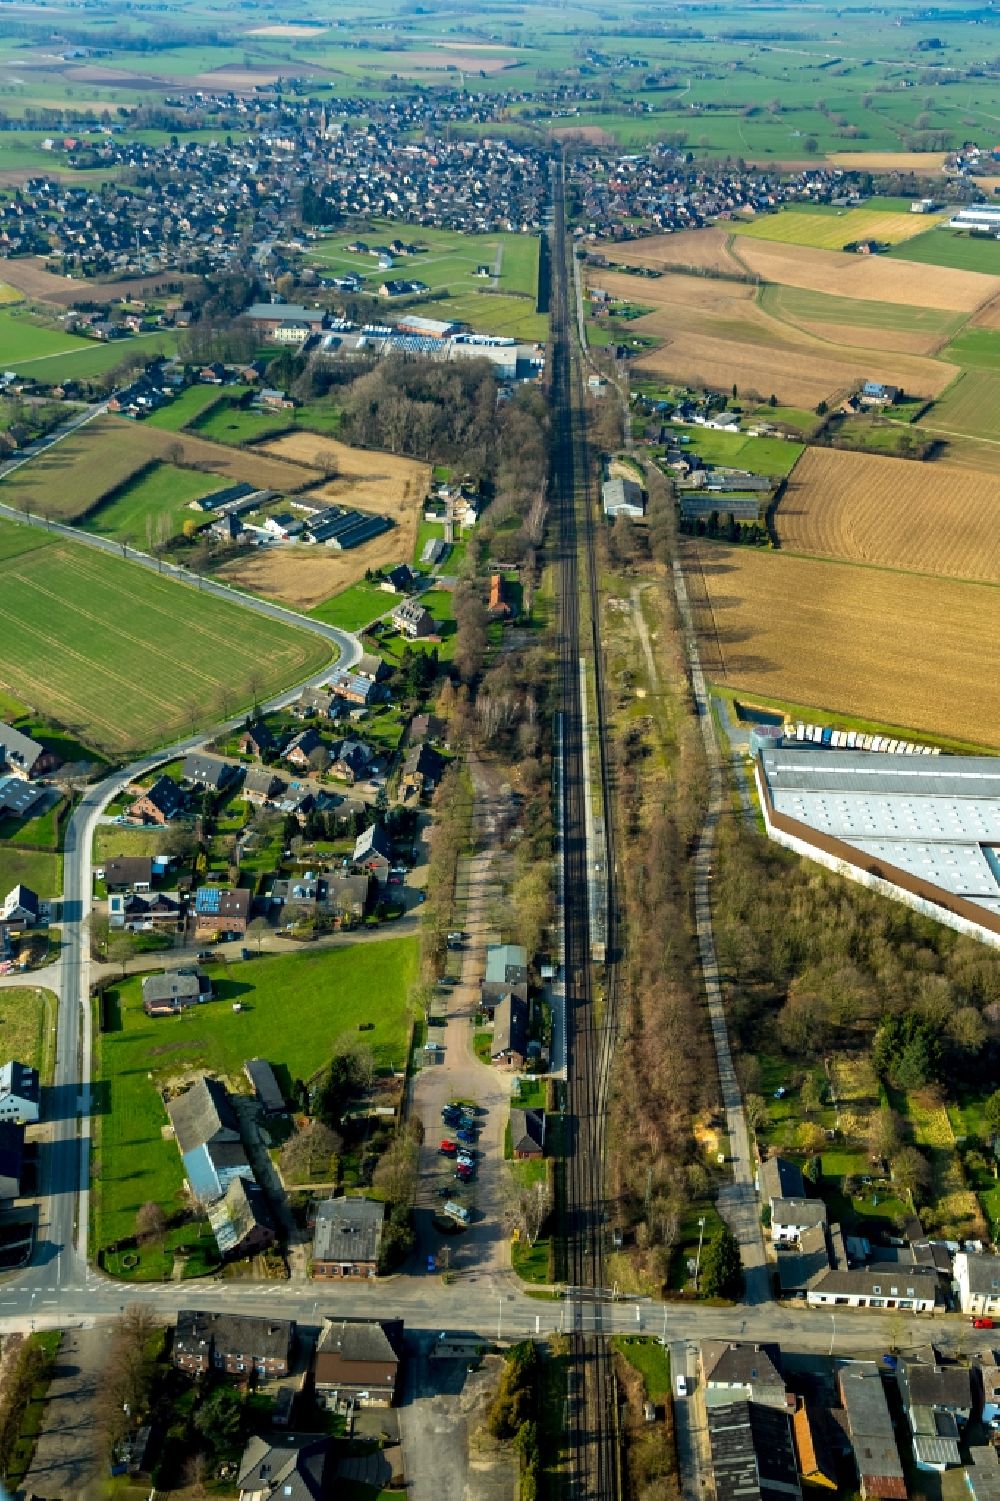 Rees von oben - Gleisverlauf und Bahnhofsgebäude der Deutschen Bahn Empel-Rees in Rees im Bundesland Nordrhein-Westfalen